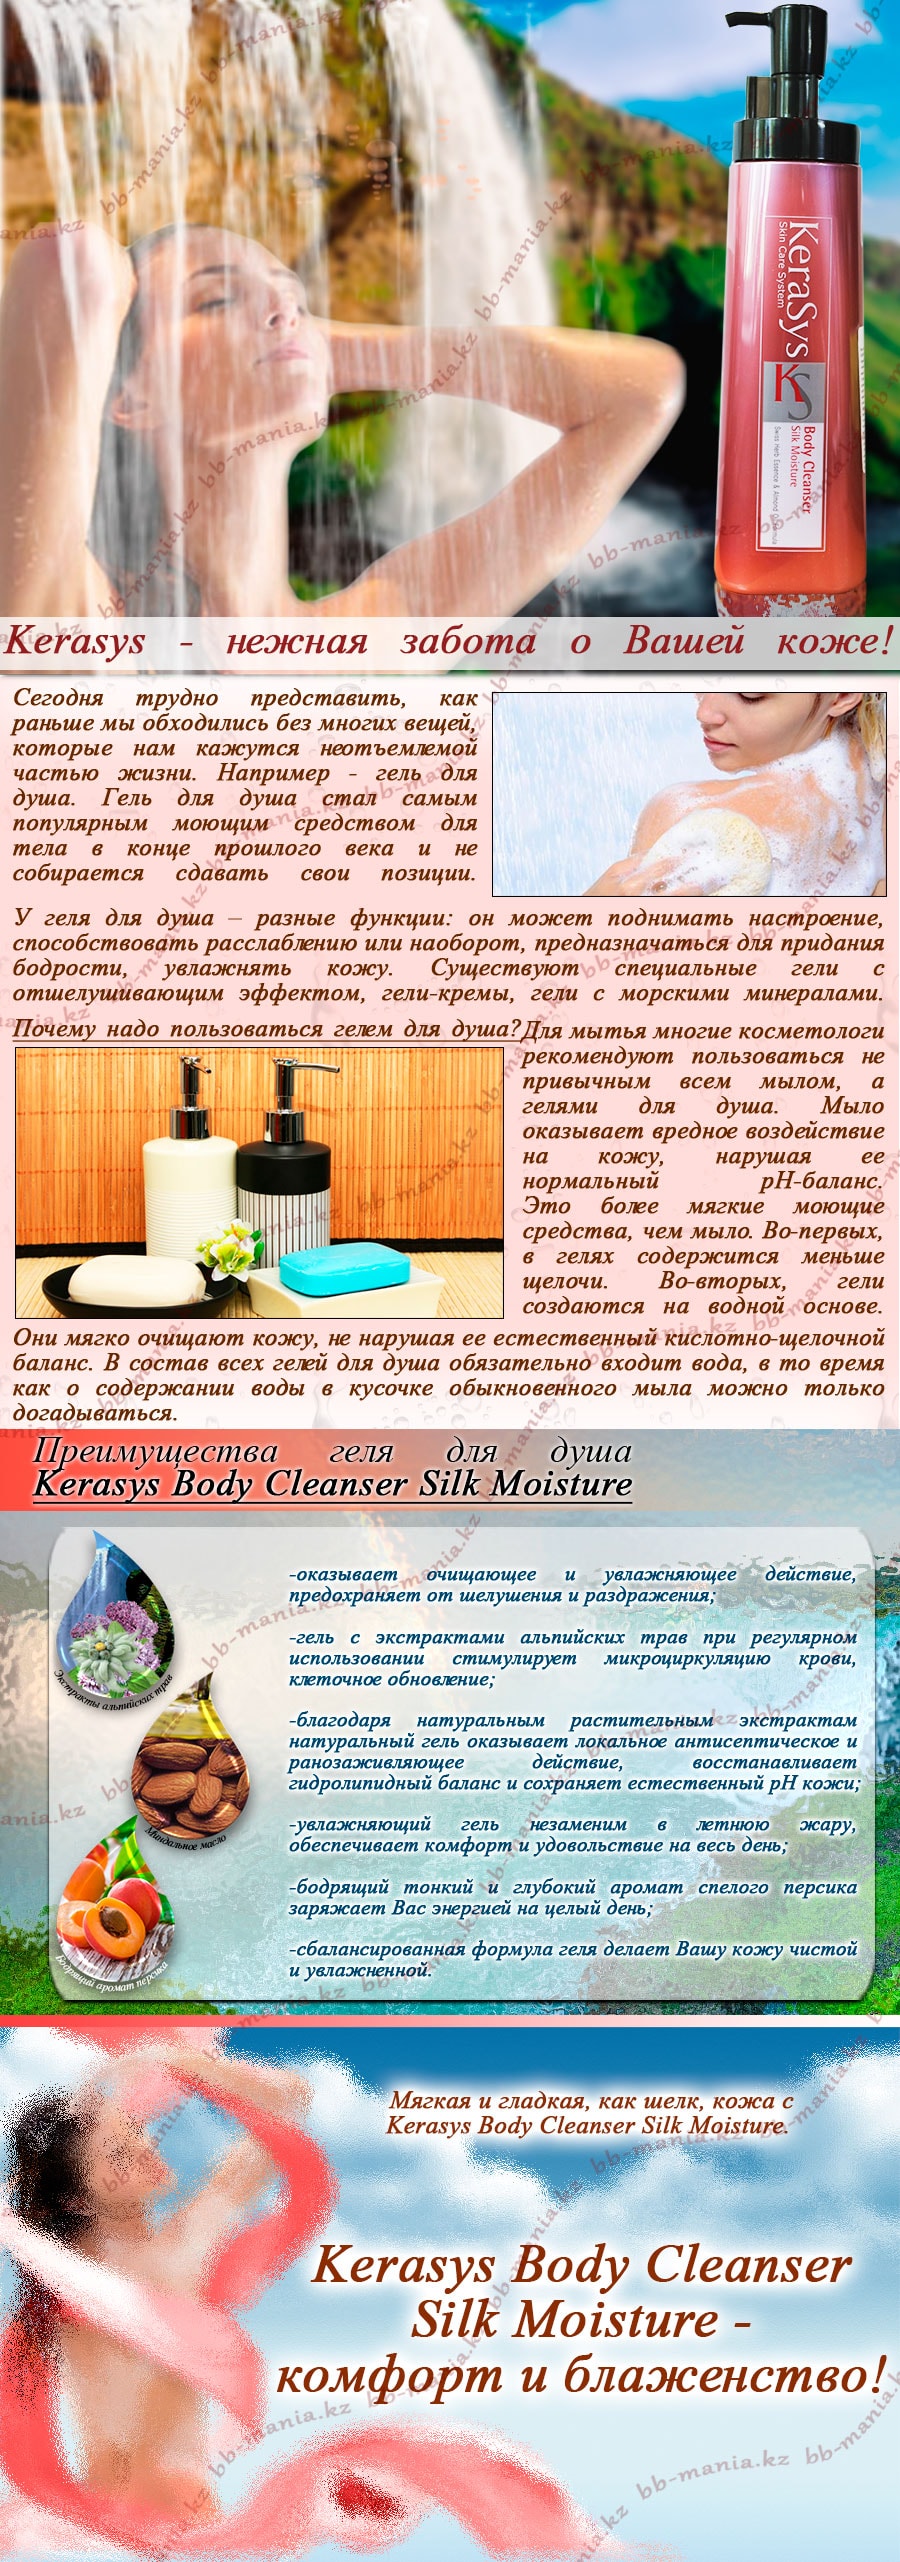 Kerasys-Body-Cleanser-Silk-Moisture-min